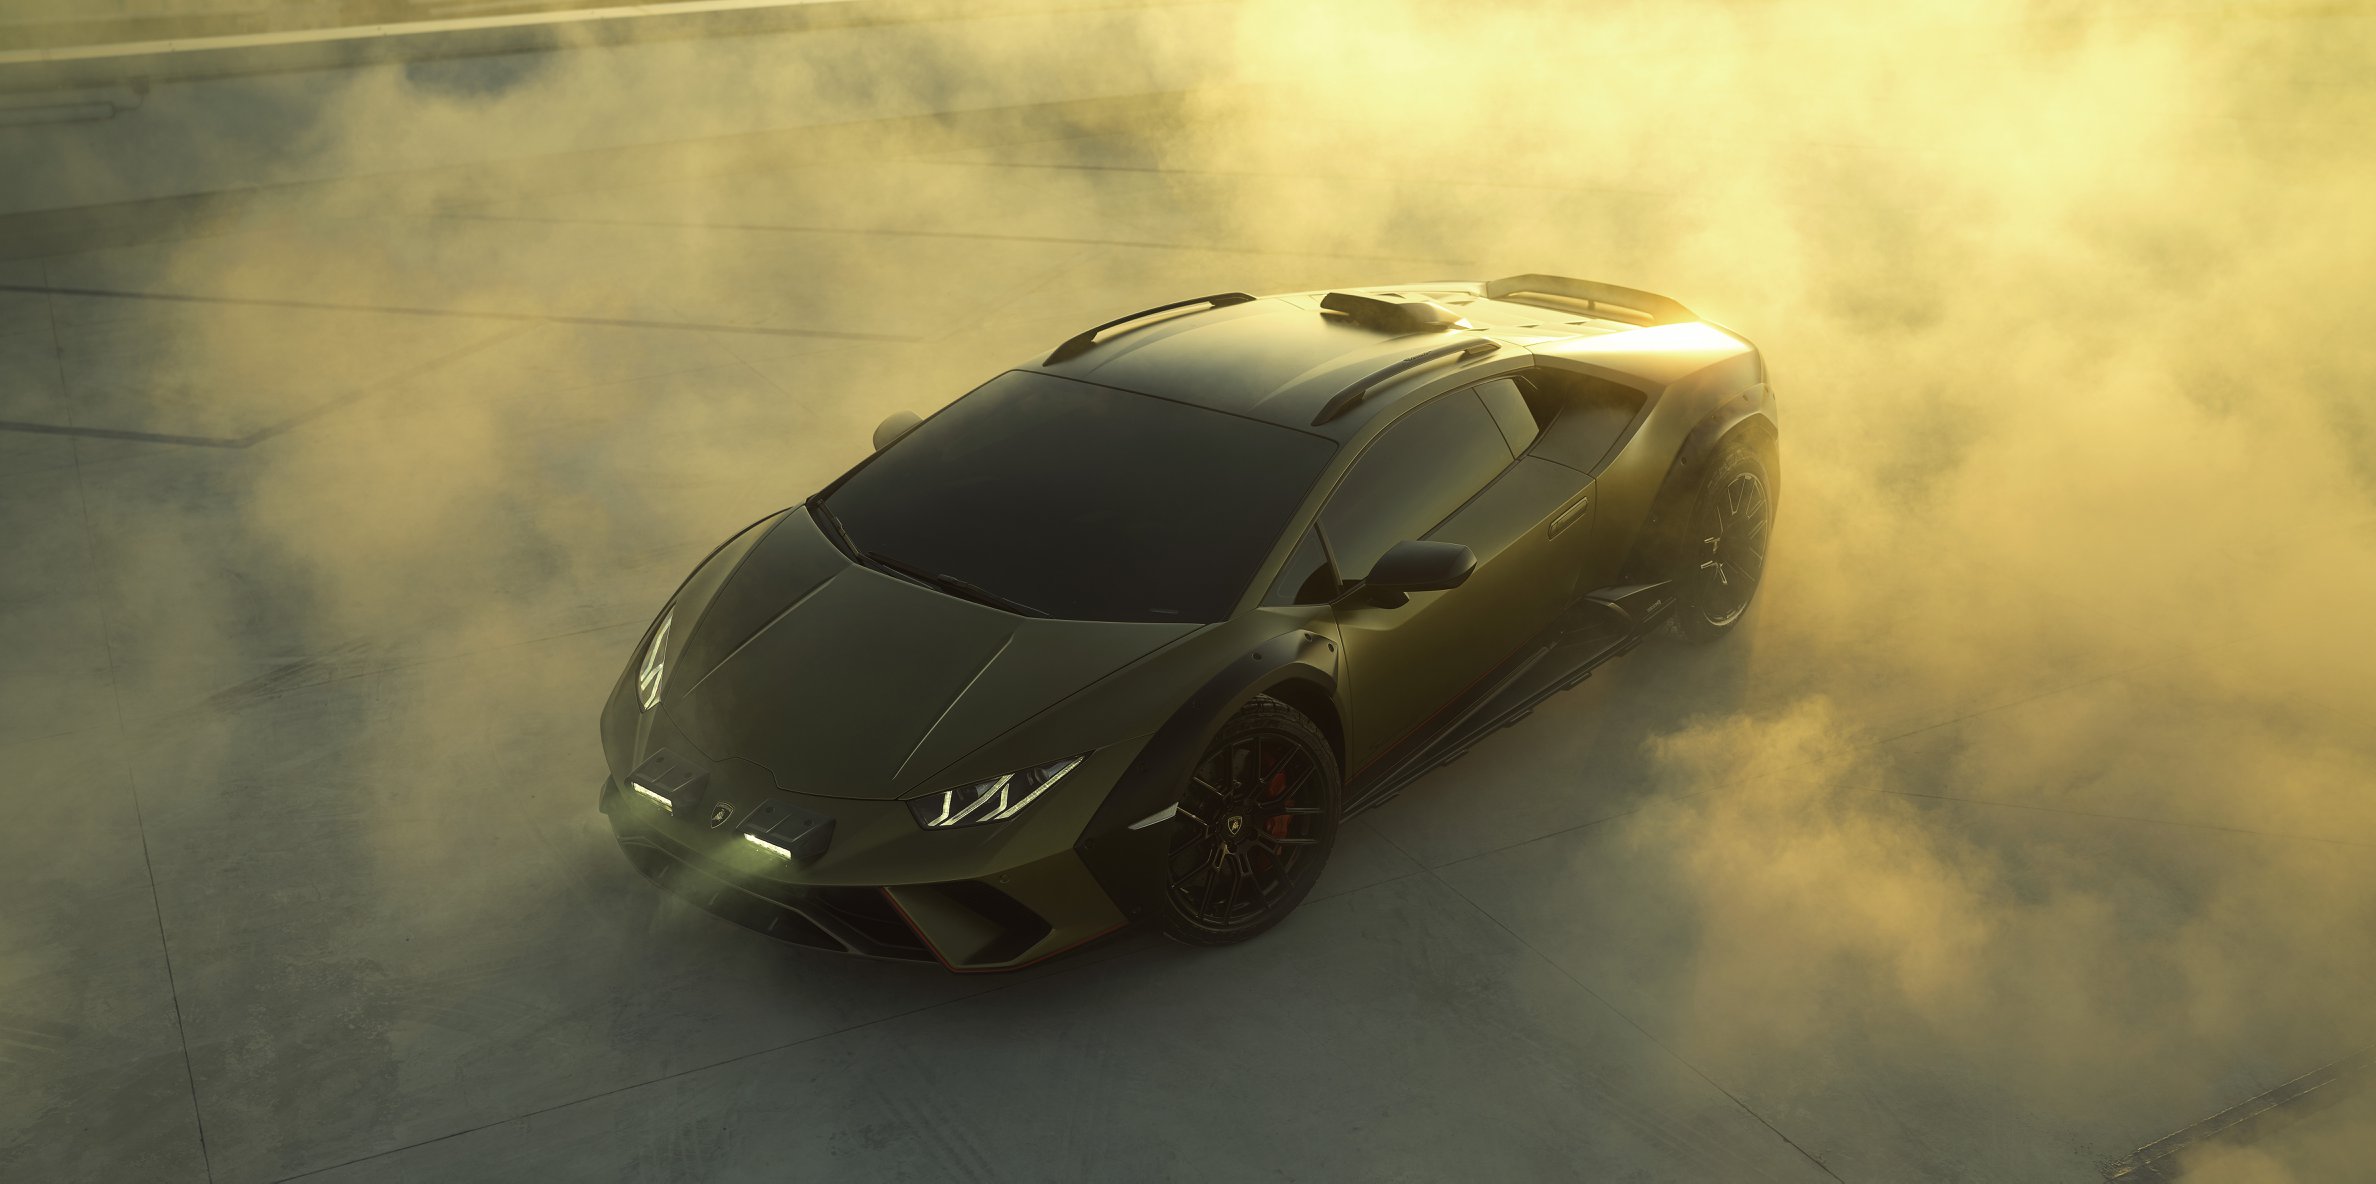 Lamborghini Added A New Photo